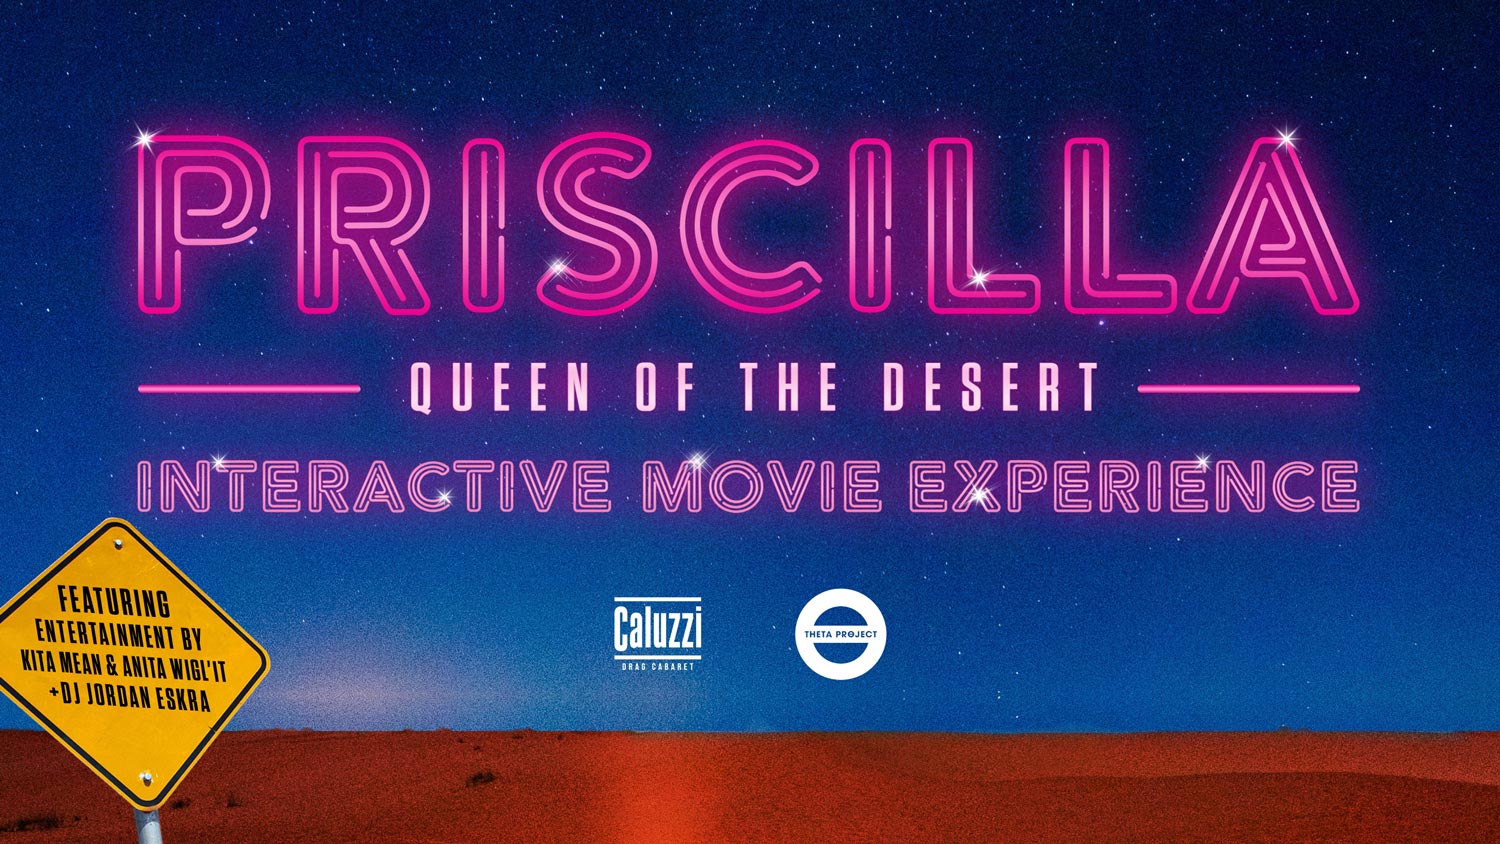 Priscilla: Interactive Movie Experience